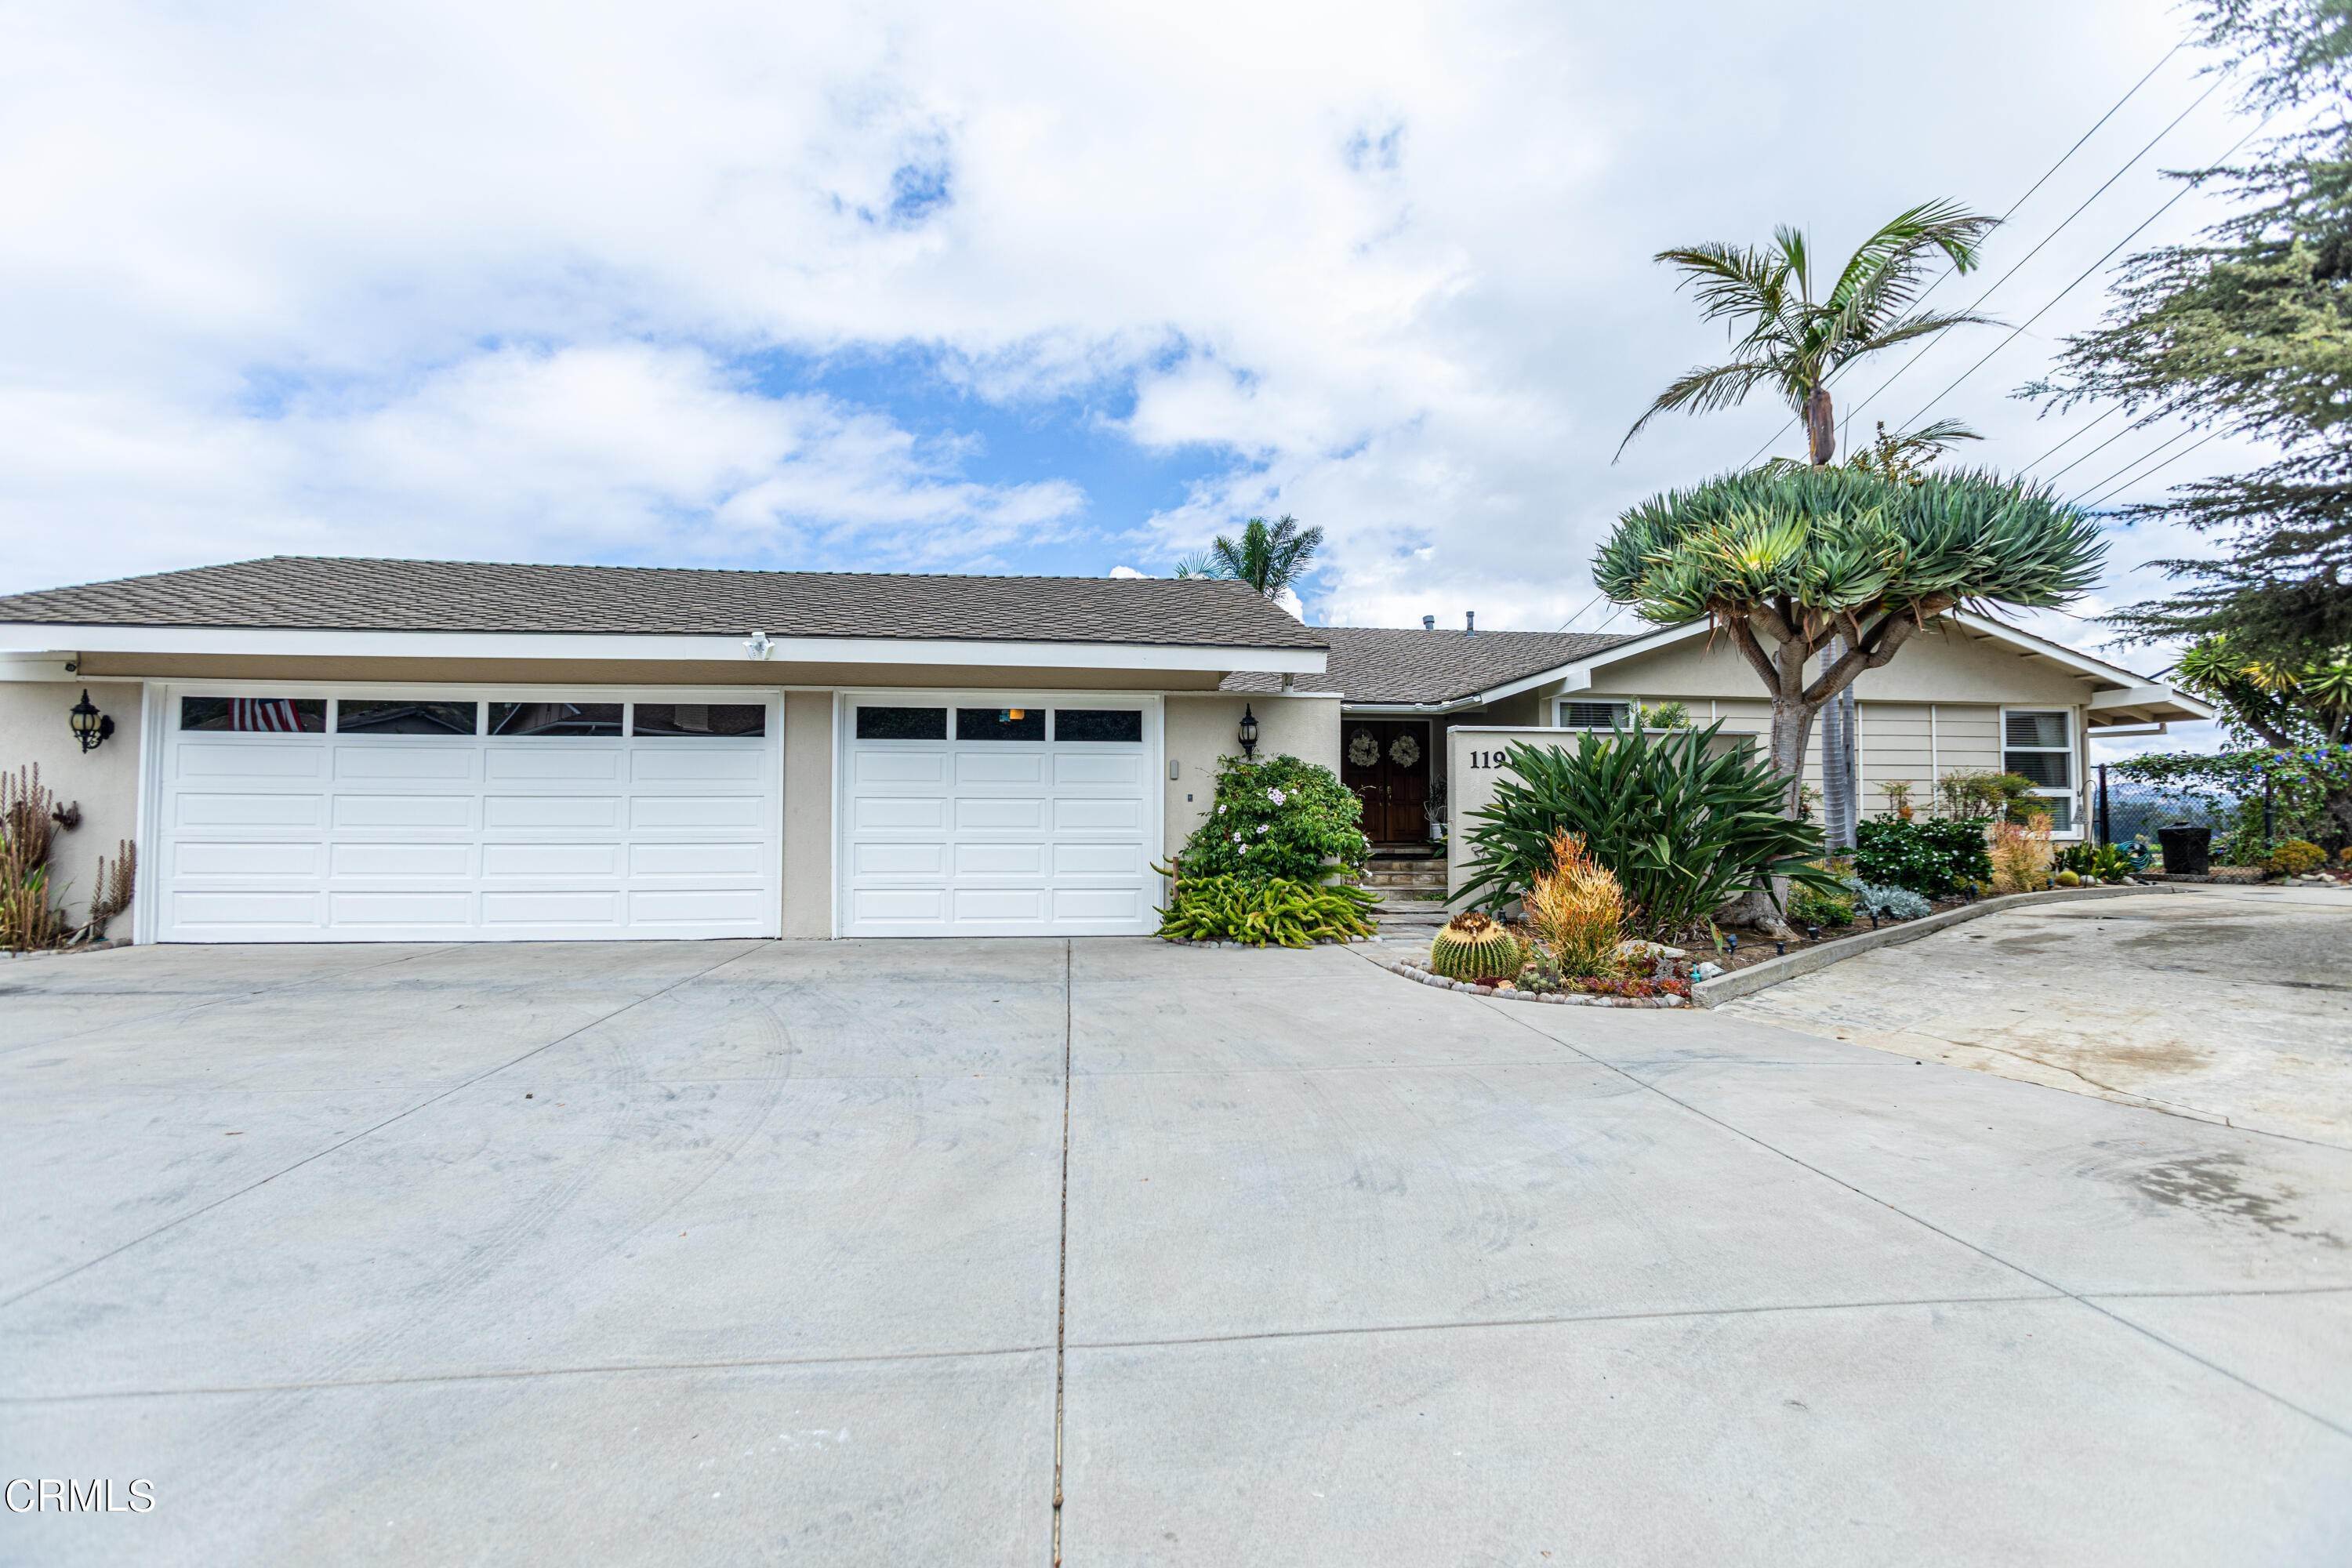 2. Single Family Homes for Sale at 1191 Trueno Avenue Camarillo, California 93010 United States